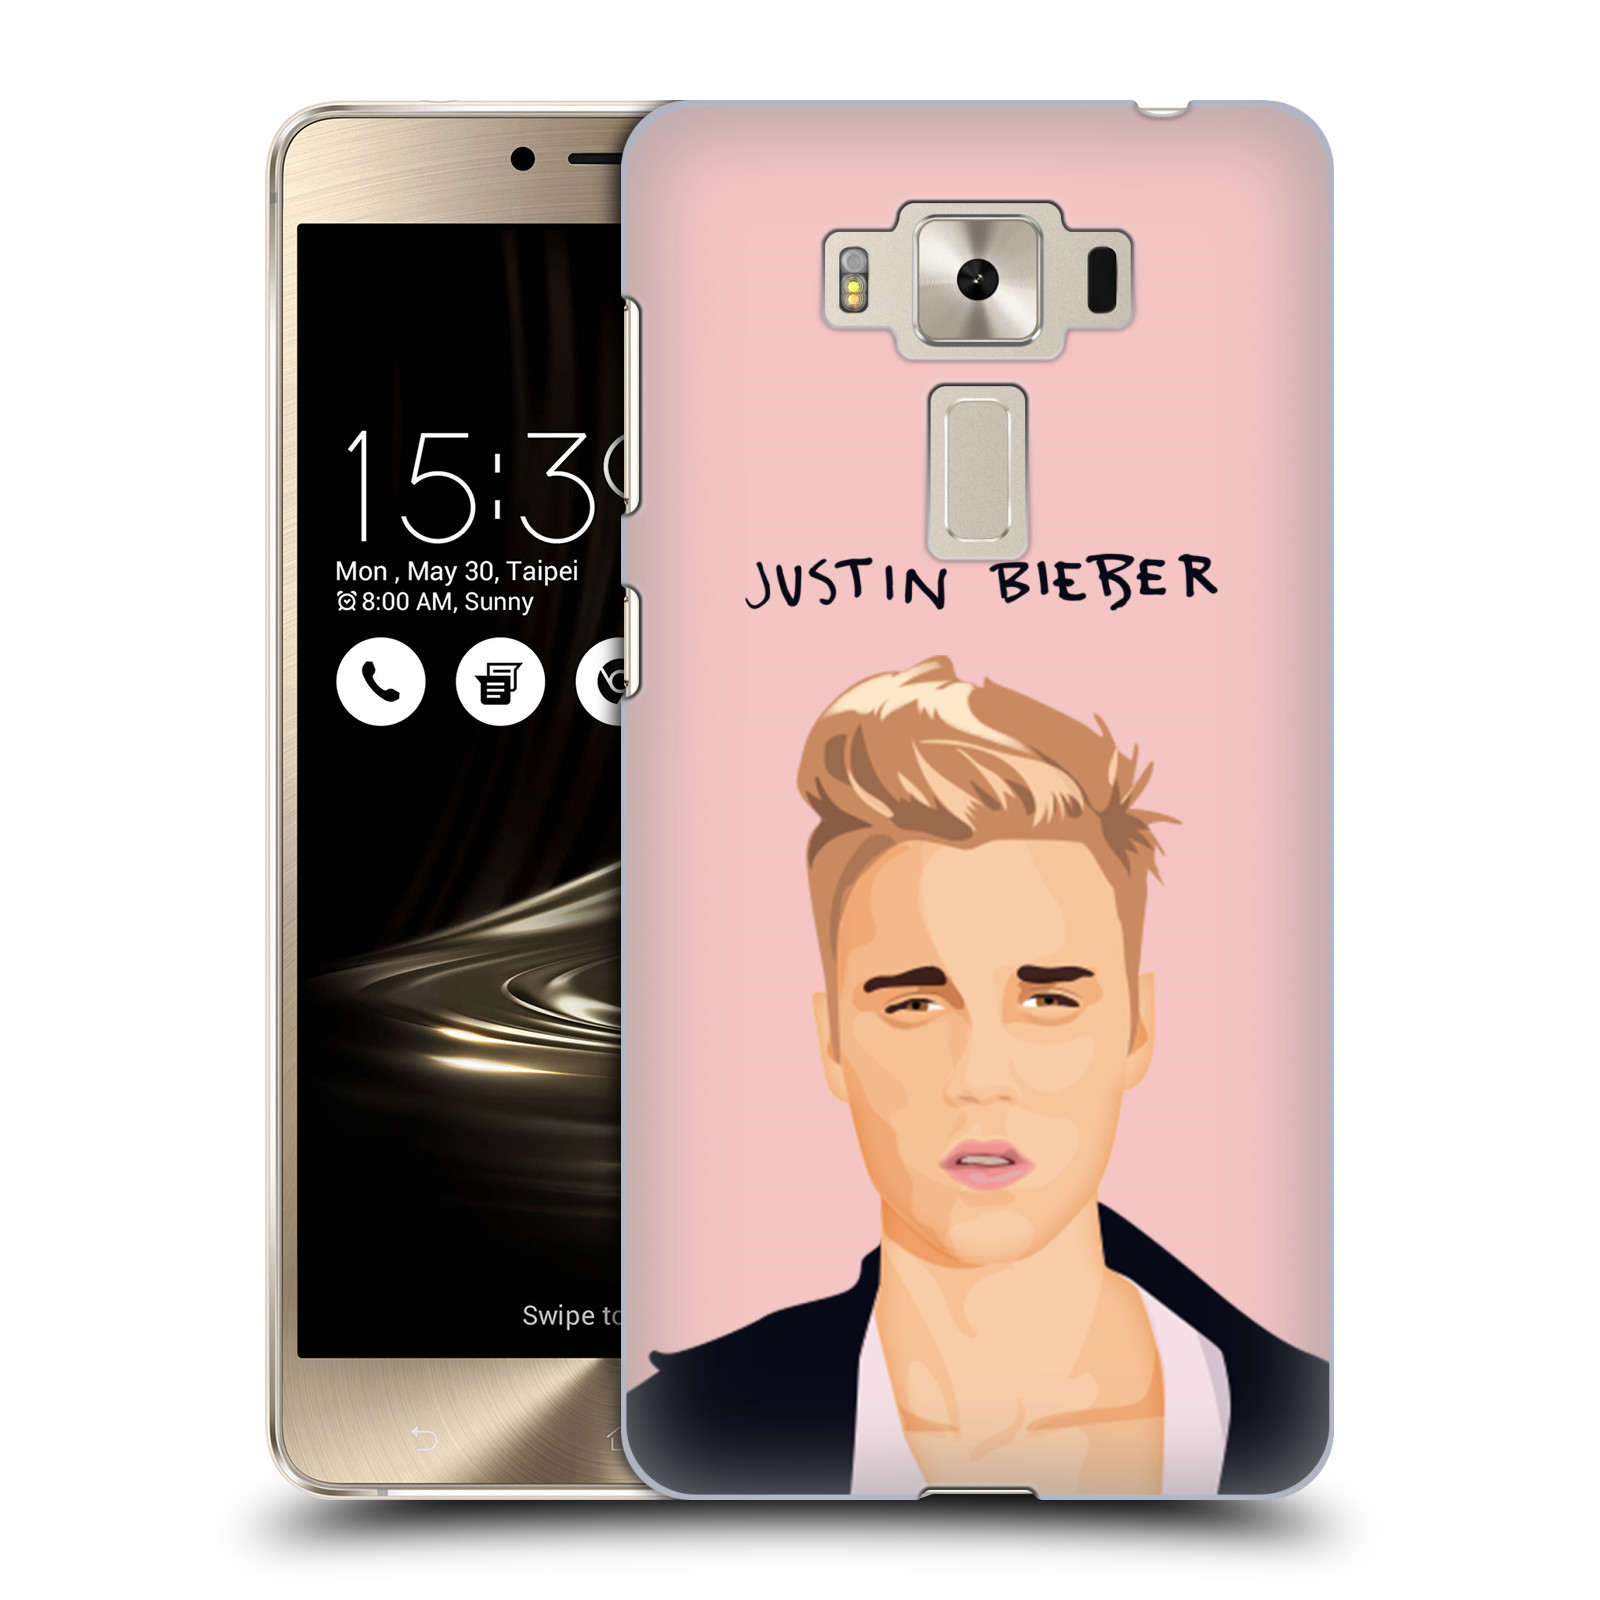 HEAD CASE plastový obal na mobil Asus Zenfone 3 DELUXE ZS550KL Justin Bieber kreslená tvář růžové pozadí